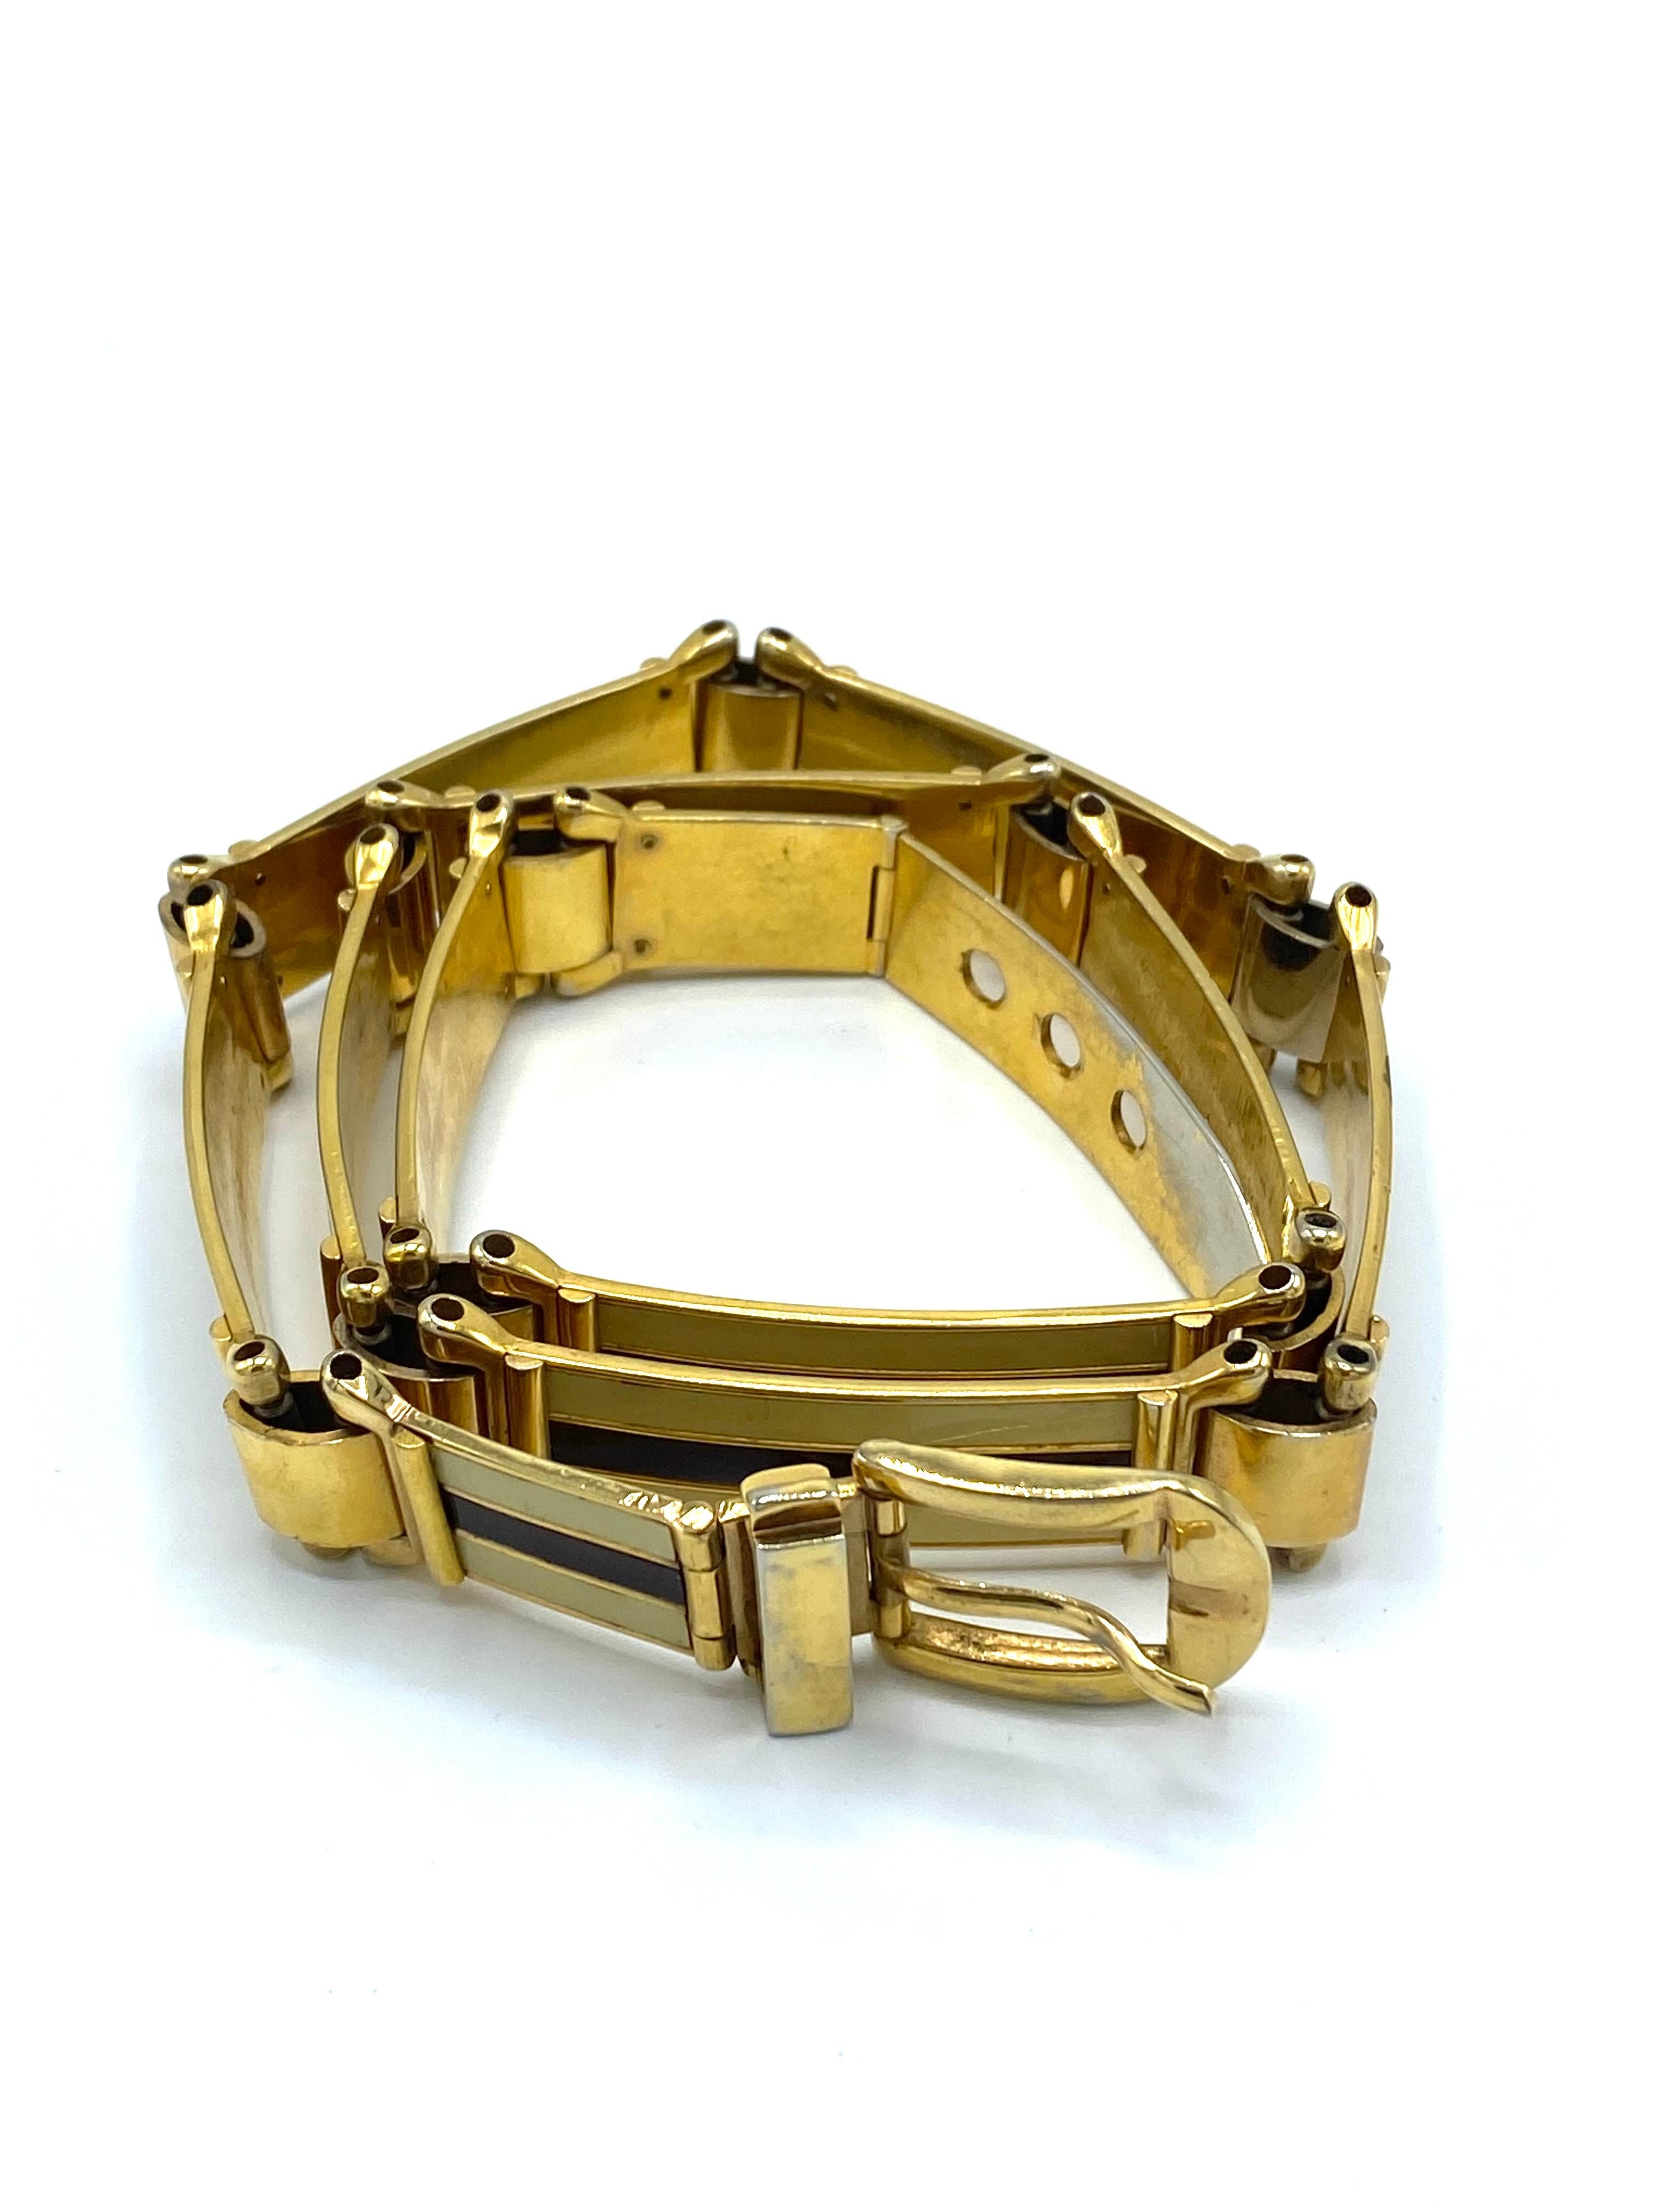 Détails du produit :

La ceinture est faite d'émail et de finition plaquée or. Il est estampillé Gucci Italy. Il convient à un tour de taille de 30-31 pouces. Fabriquées en Italie.
Mesures : 32 pouces de long et 5/8 pouces de large.


